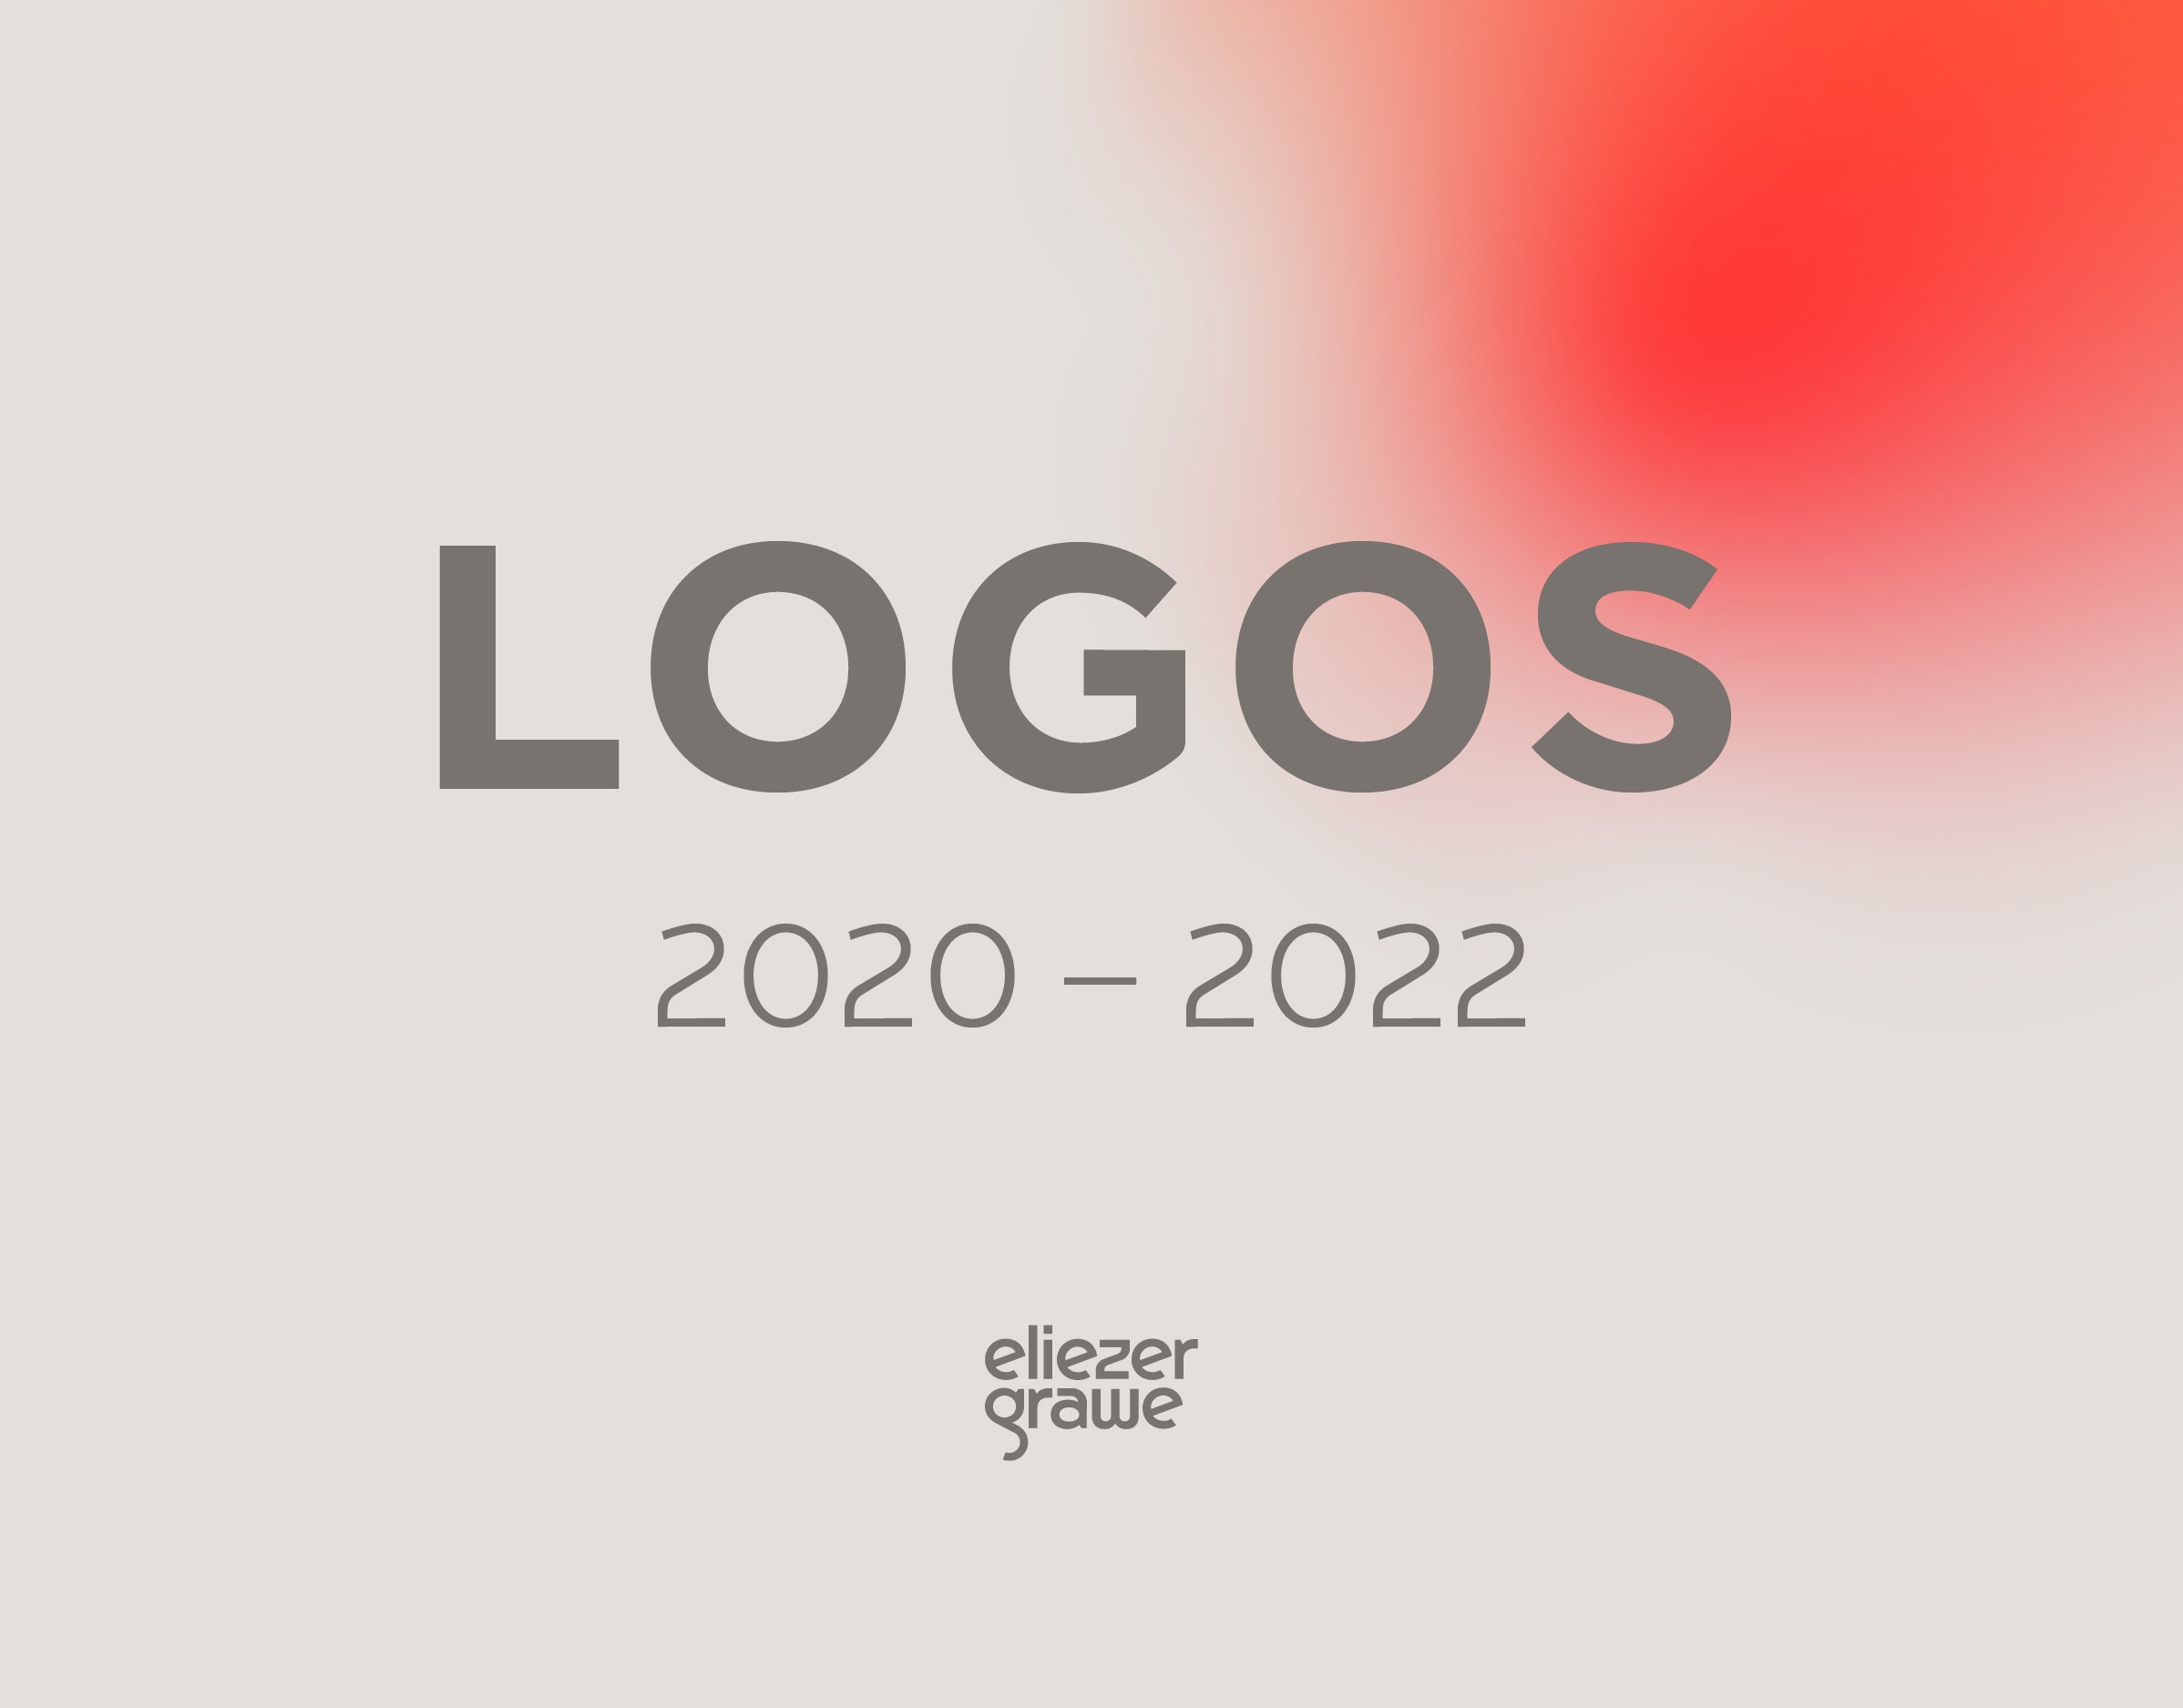 Logos 2020-2022